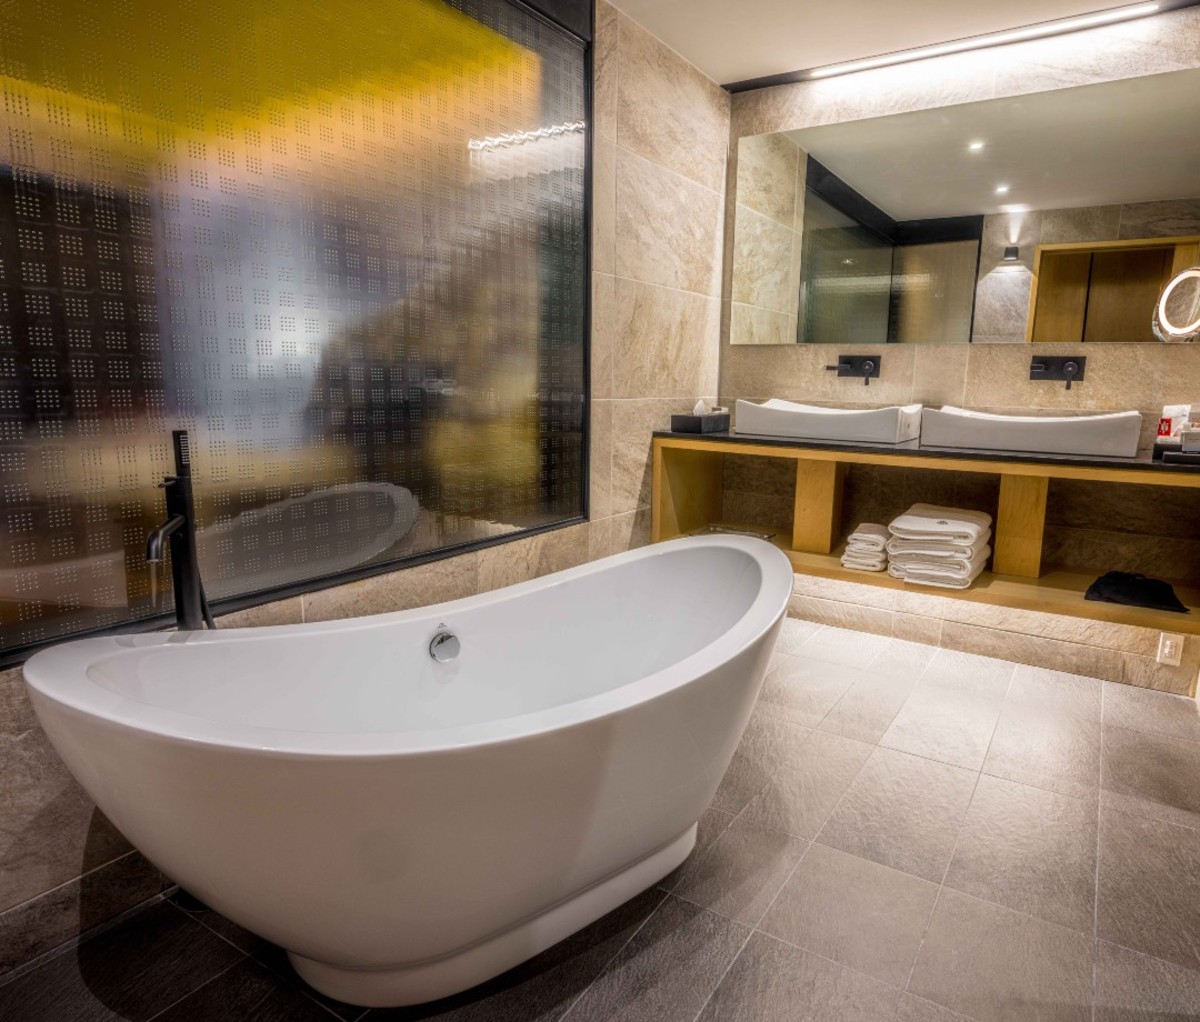 Luxury hotel bathroom with tub